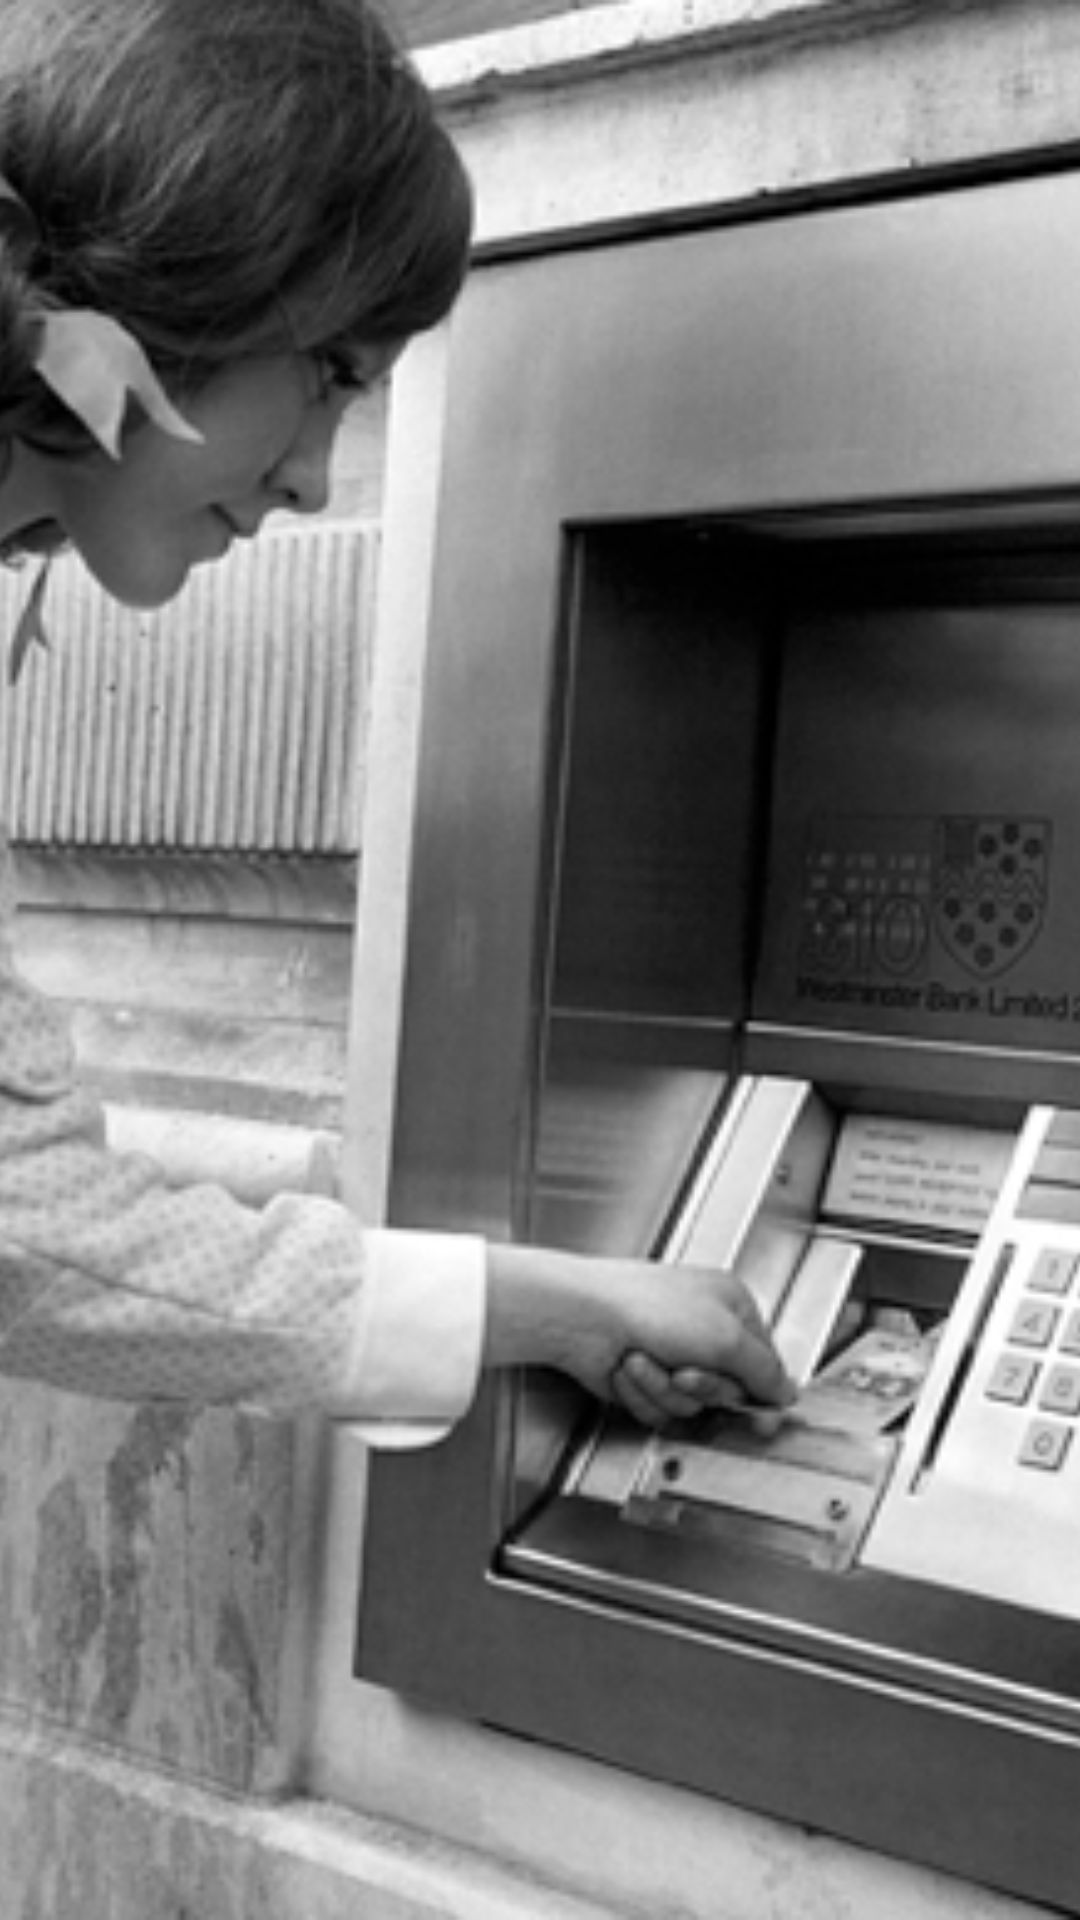 किस देश में लगा था दुनिया का पहला ATM?